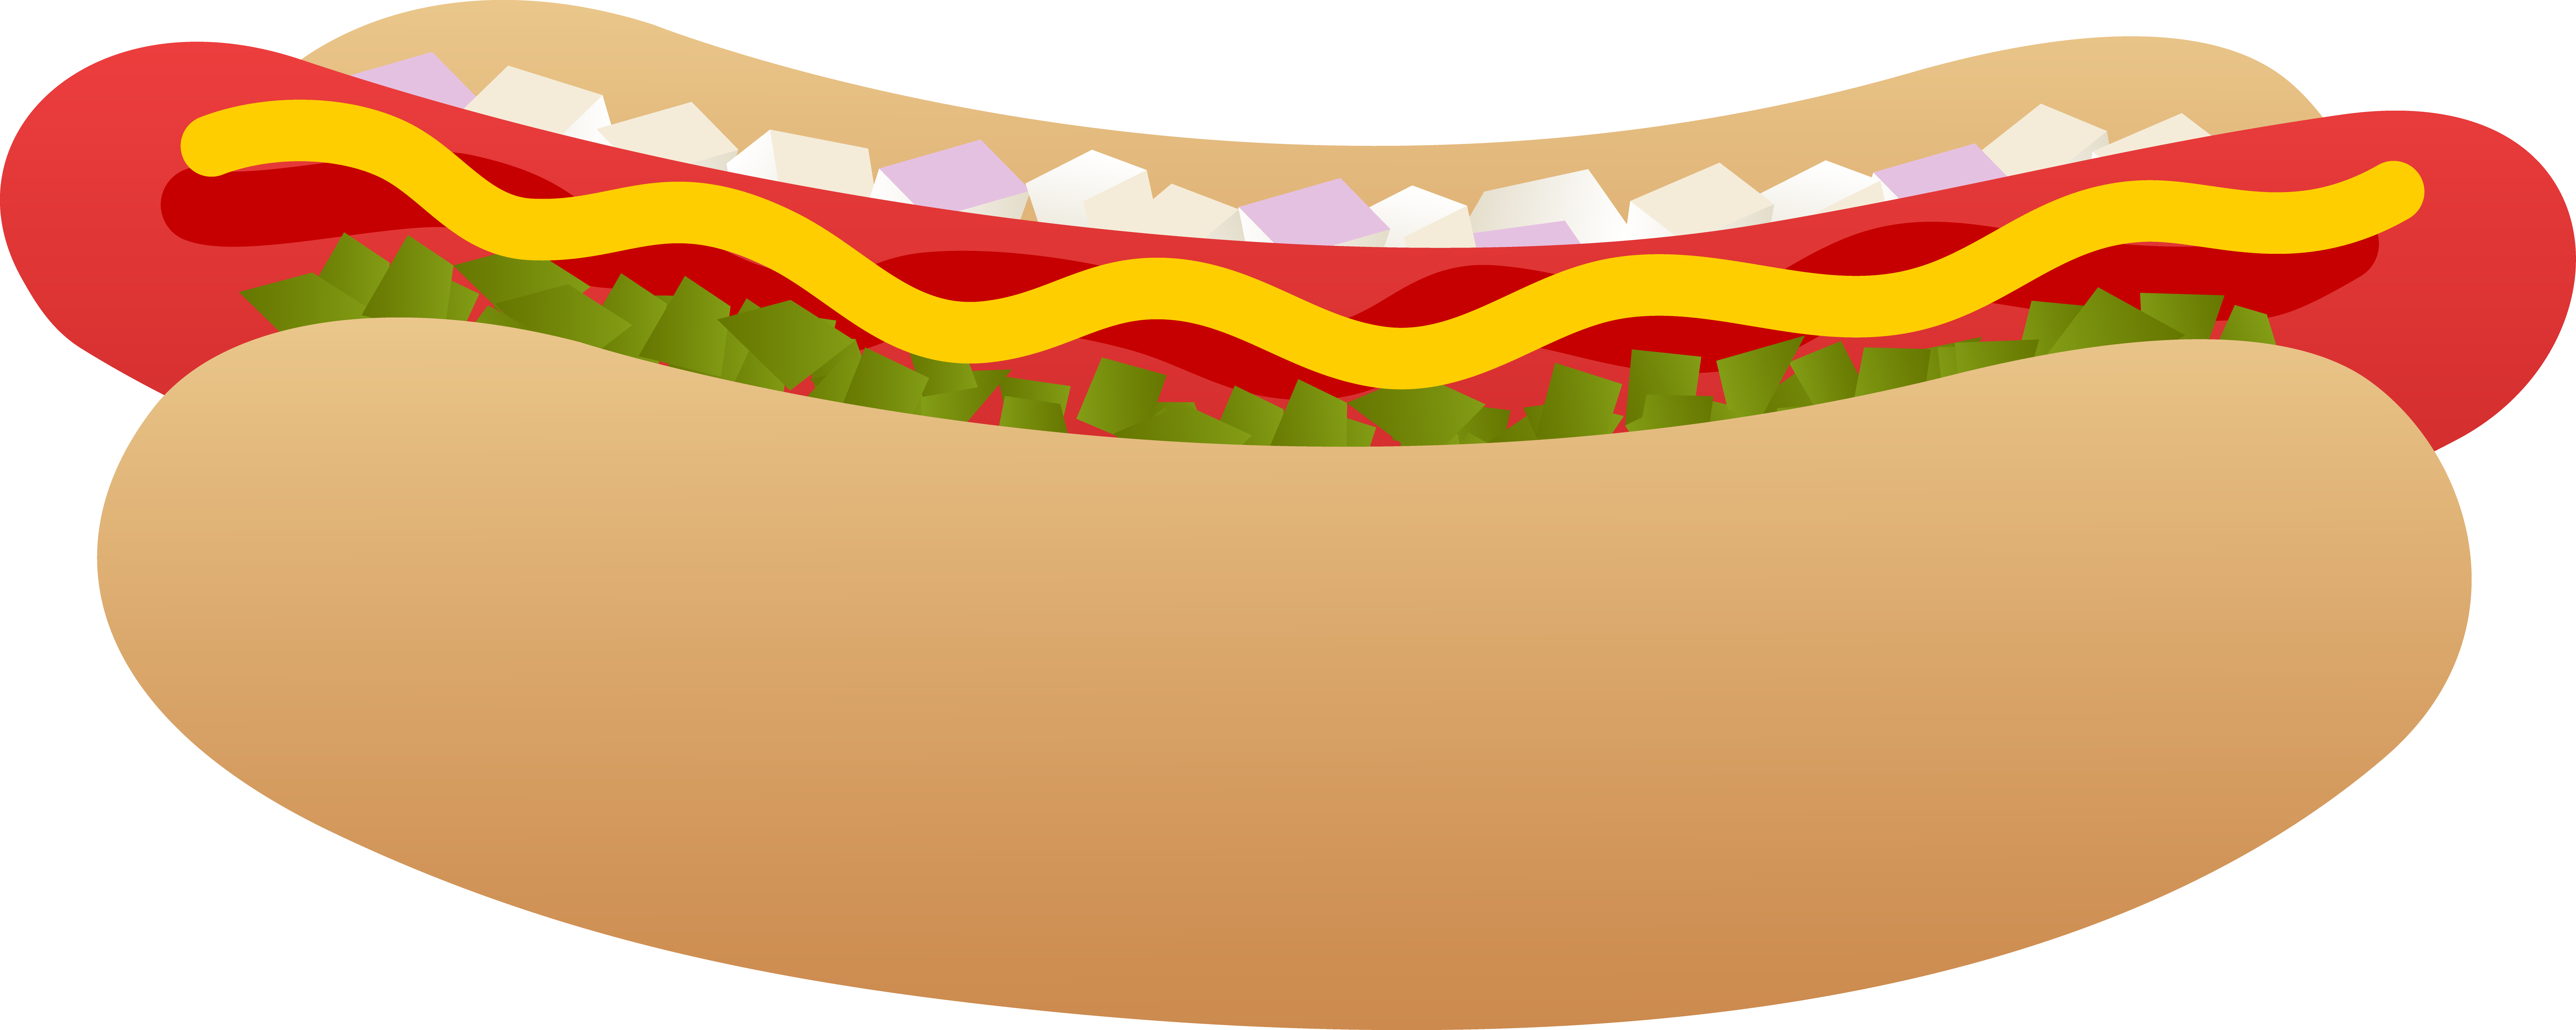 In need of a hotdog sandwich 